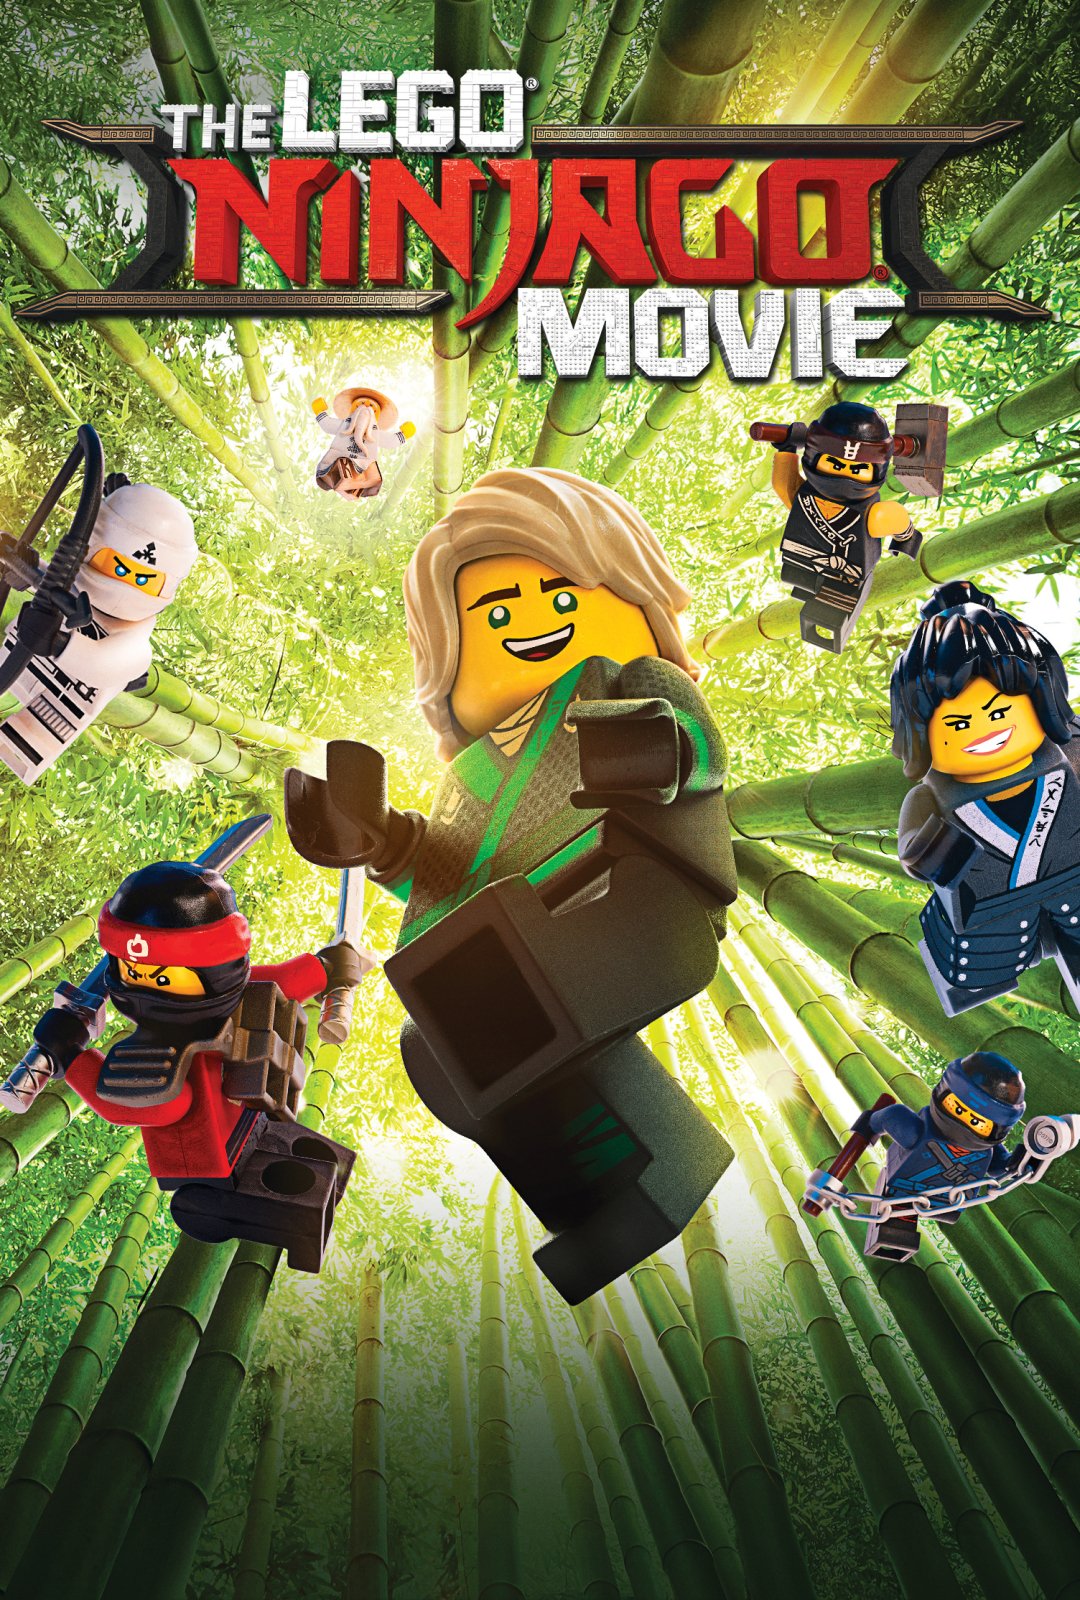 The Lego Ninjago Movie